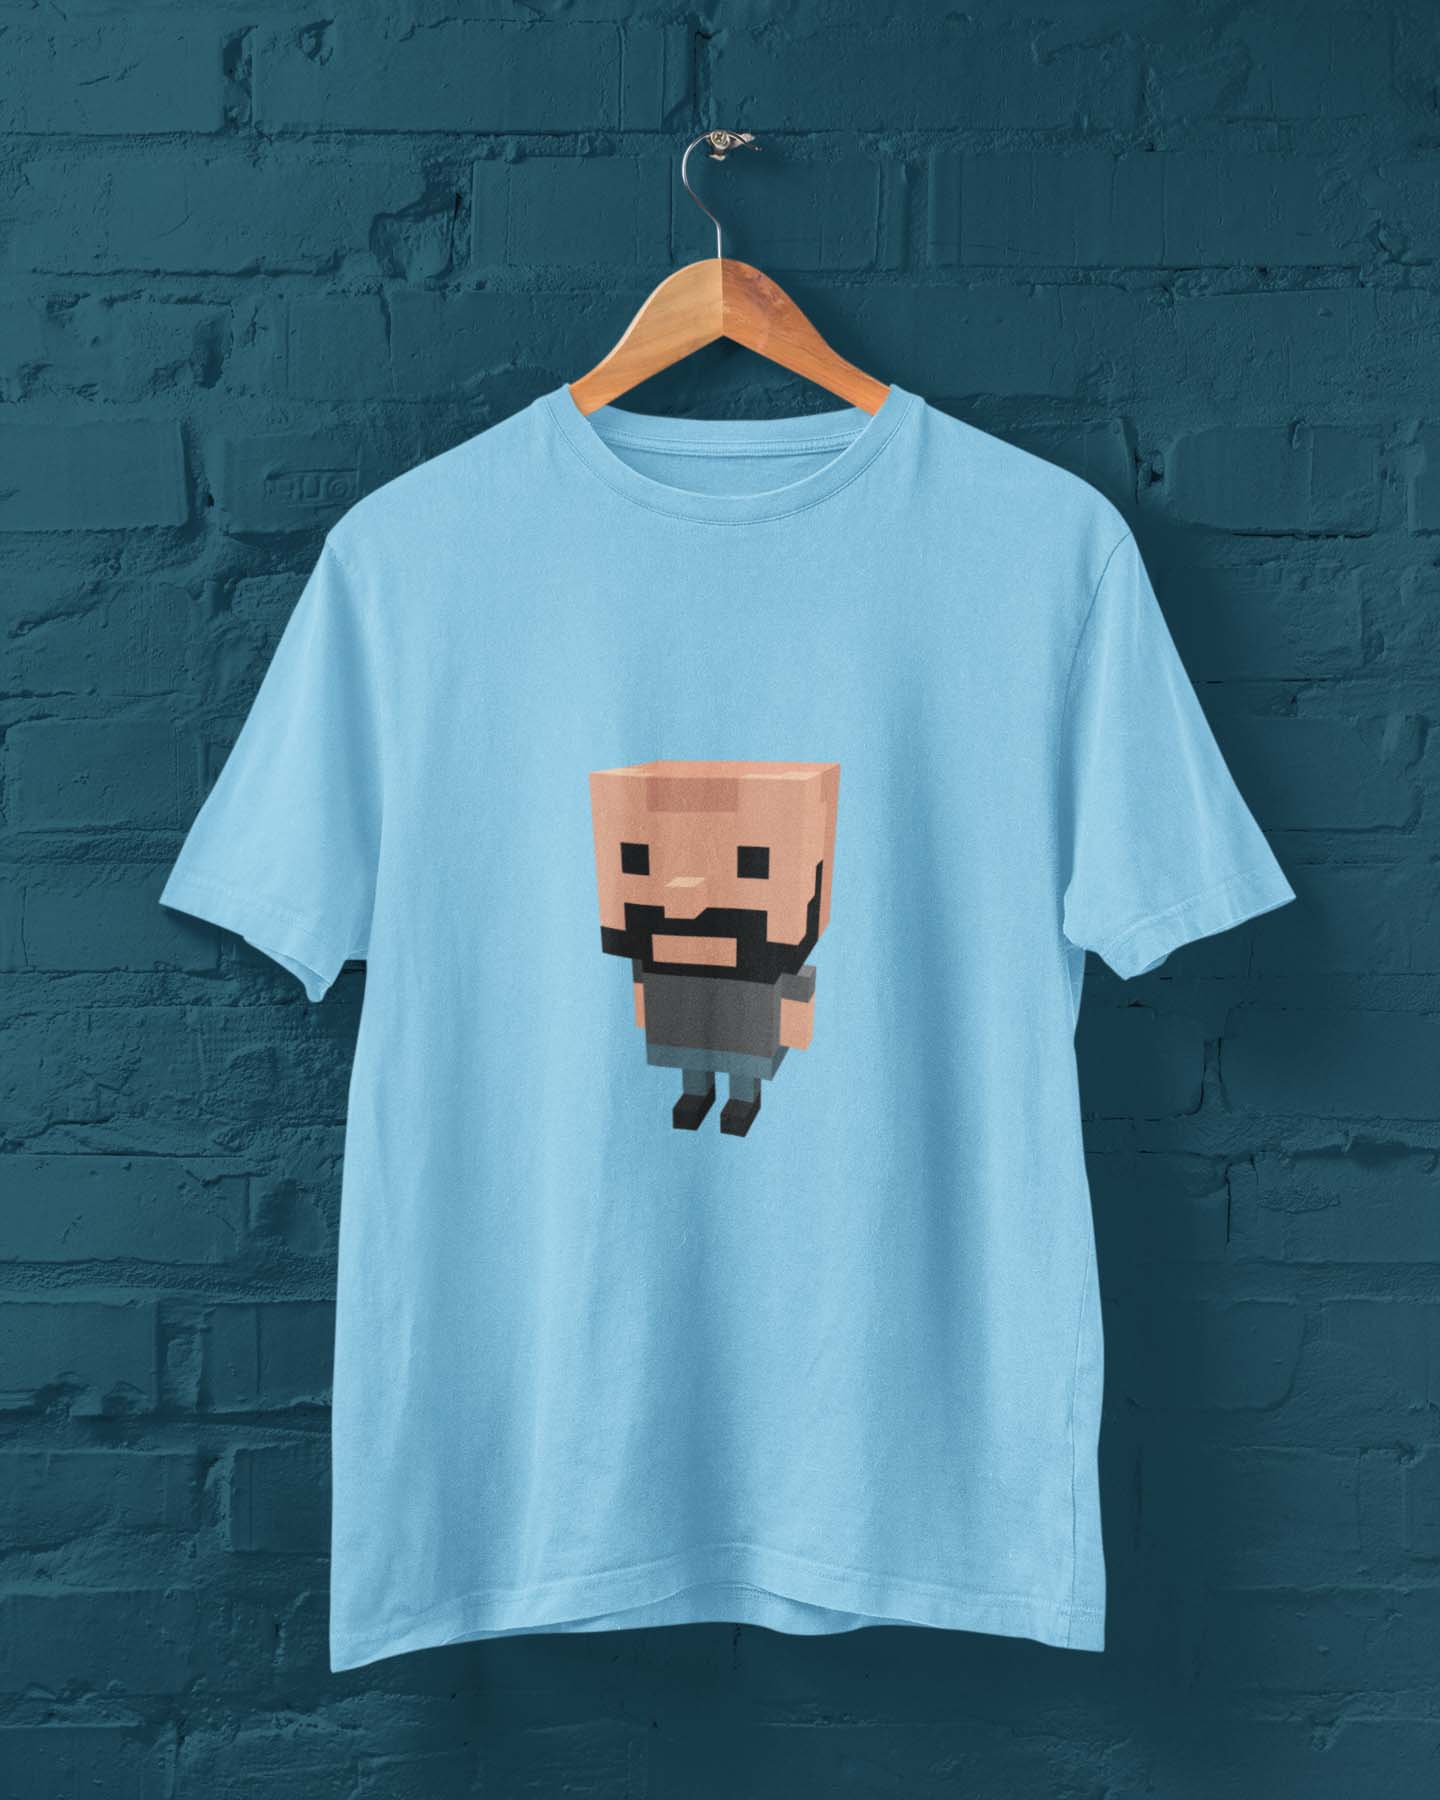 Creeper printed t shirt for men